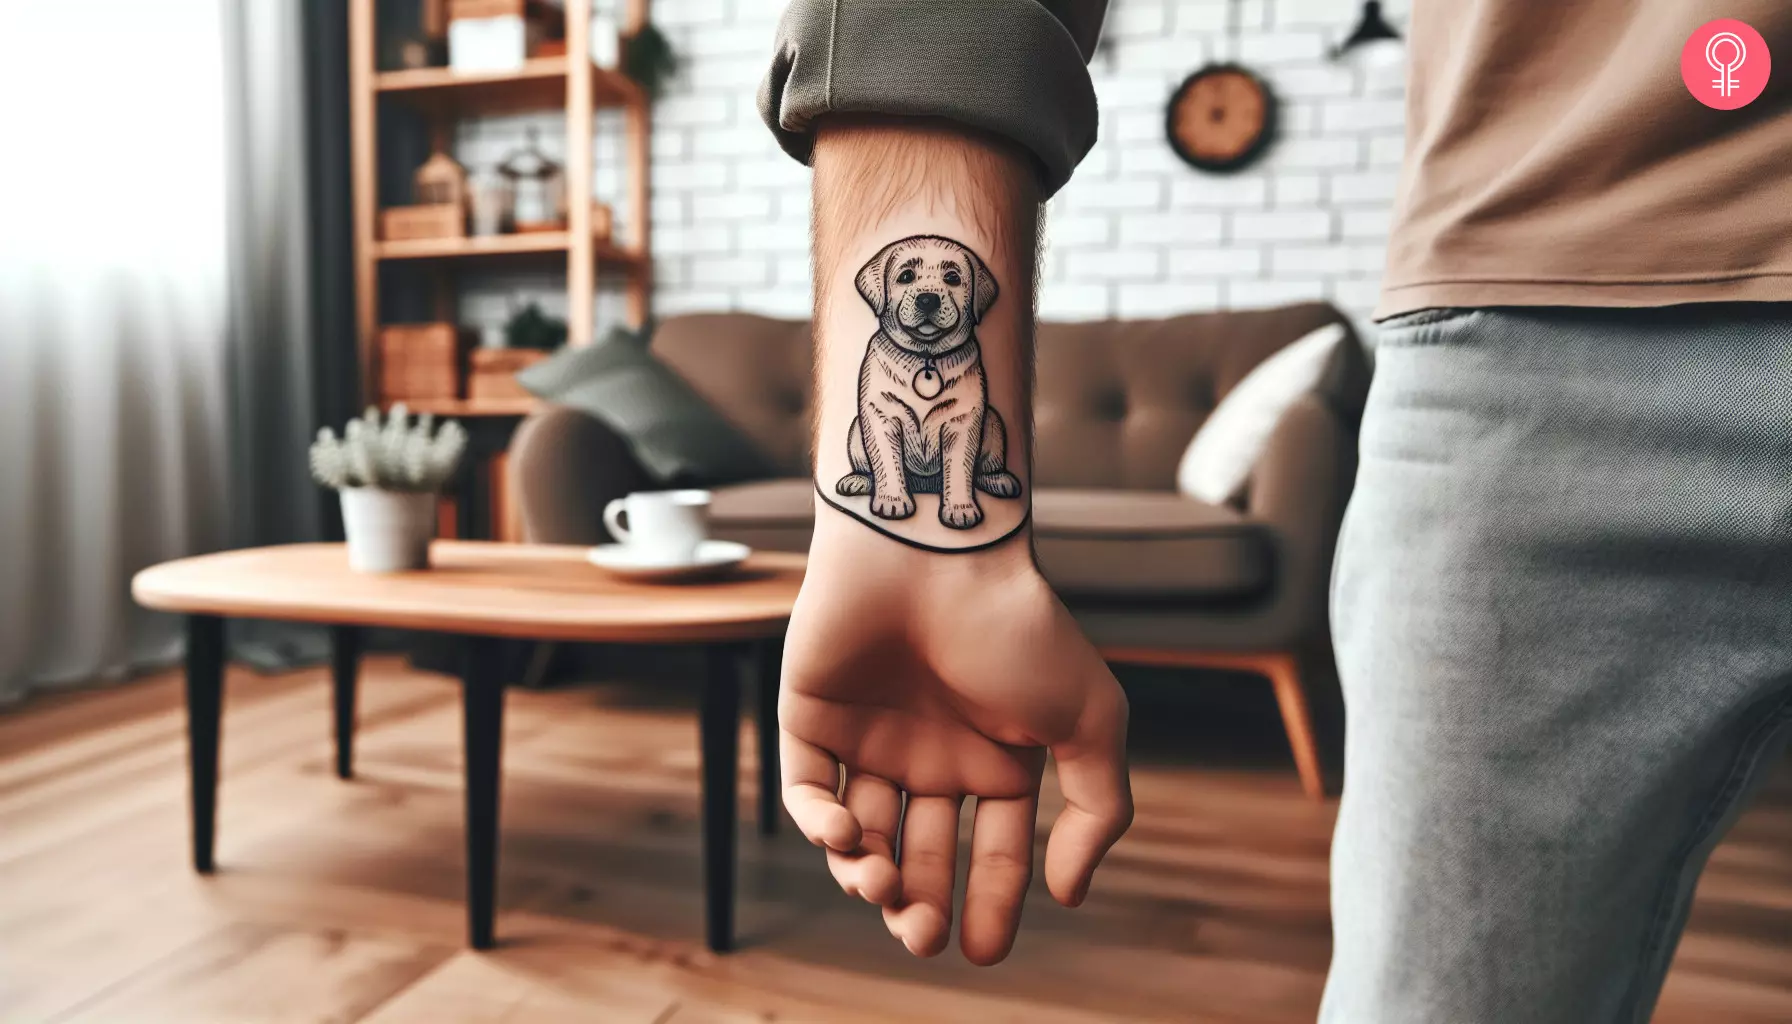 A Labrador outline tattoo on a man’s wrist